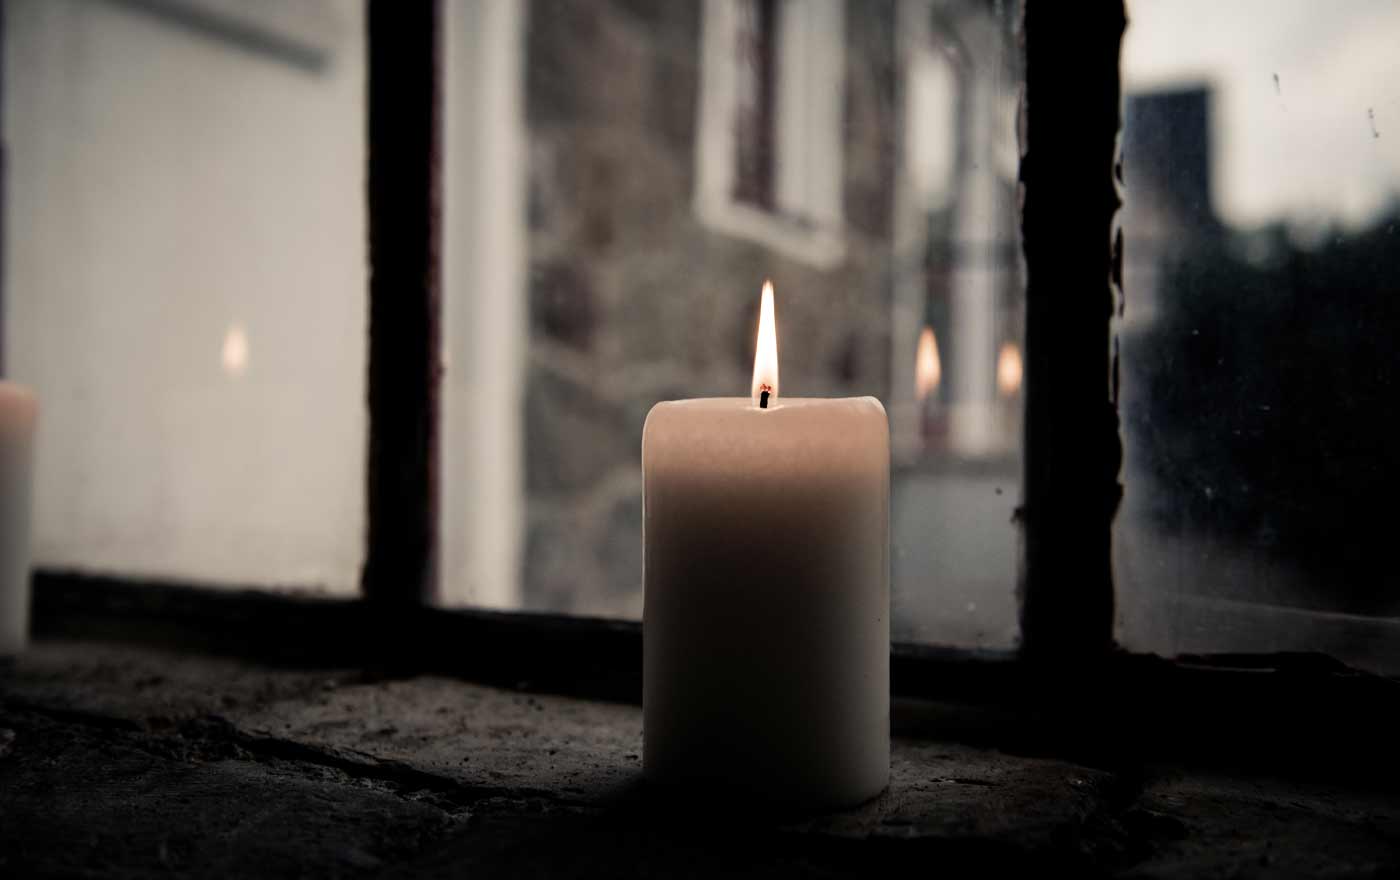 "Als ich das erste Mal die Kerze angezündet habe, war es noch dunkel. Seitdem ist es ein liebgewordenes Ritual am Abend um 8 Uhr..." Foto: pexels